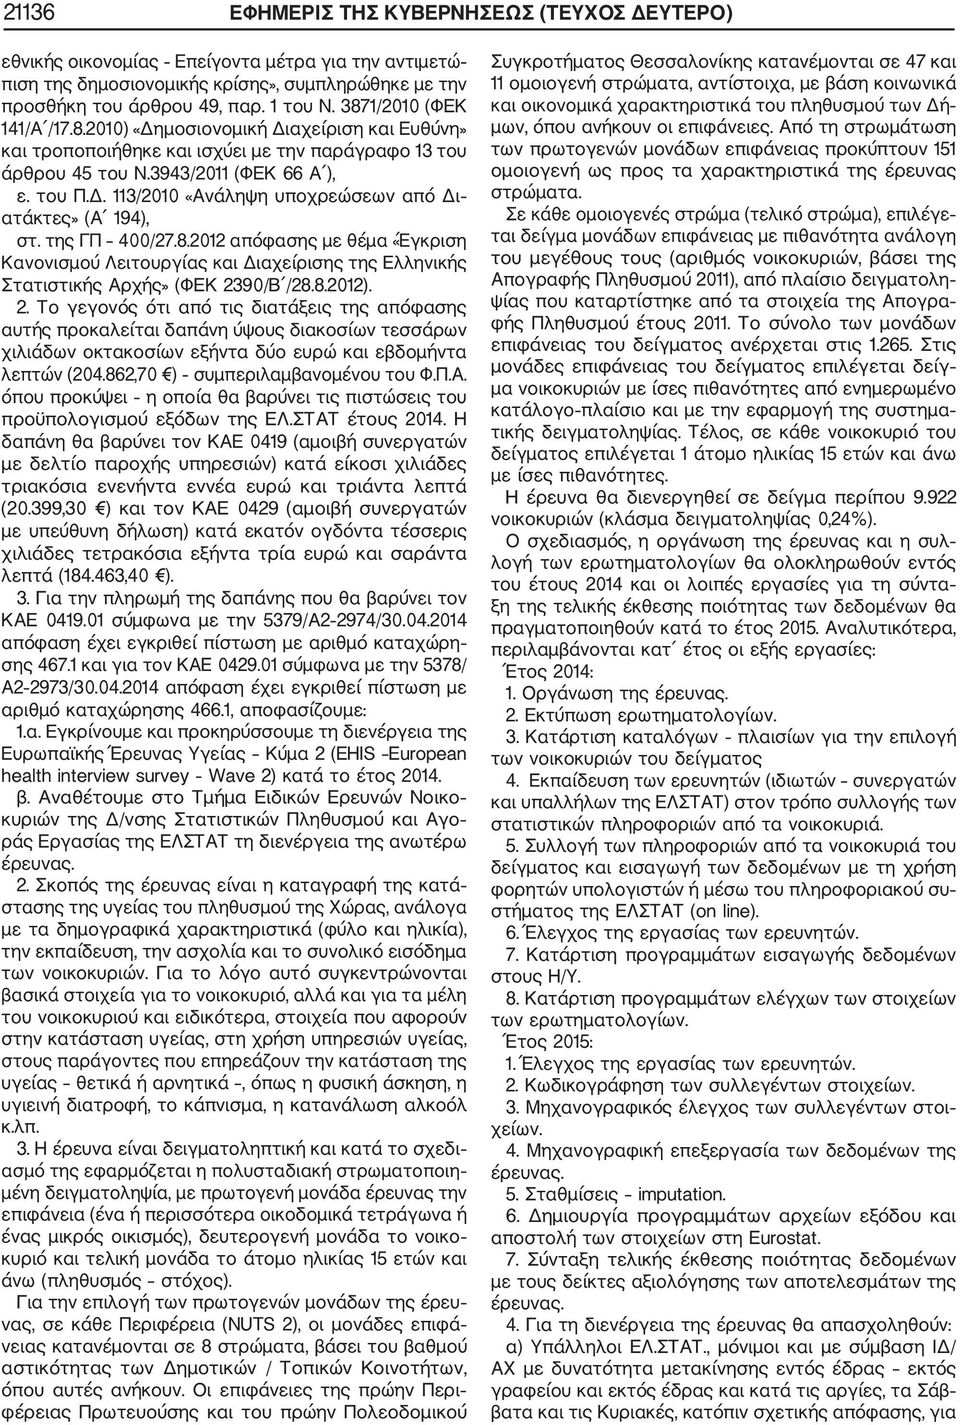 της ΓΠ 400/27.8.2012 απόφασης με θέμα «Έγκριση Κανονισμού Λειτουργίας και Διαχείρισης της Ελληνικής Στατιστικής Αρχής» (ΦΕΚ 23